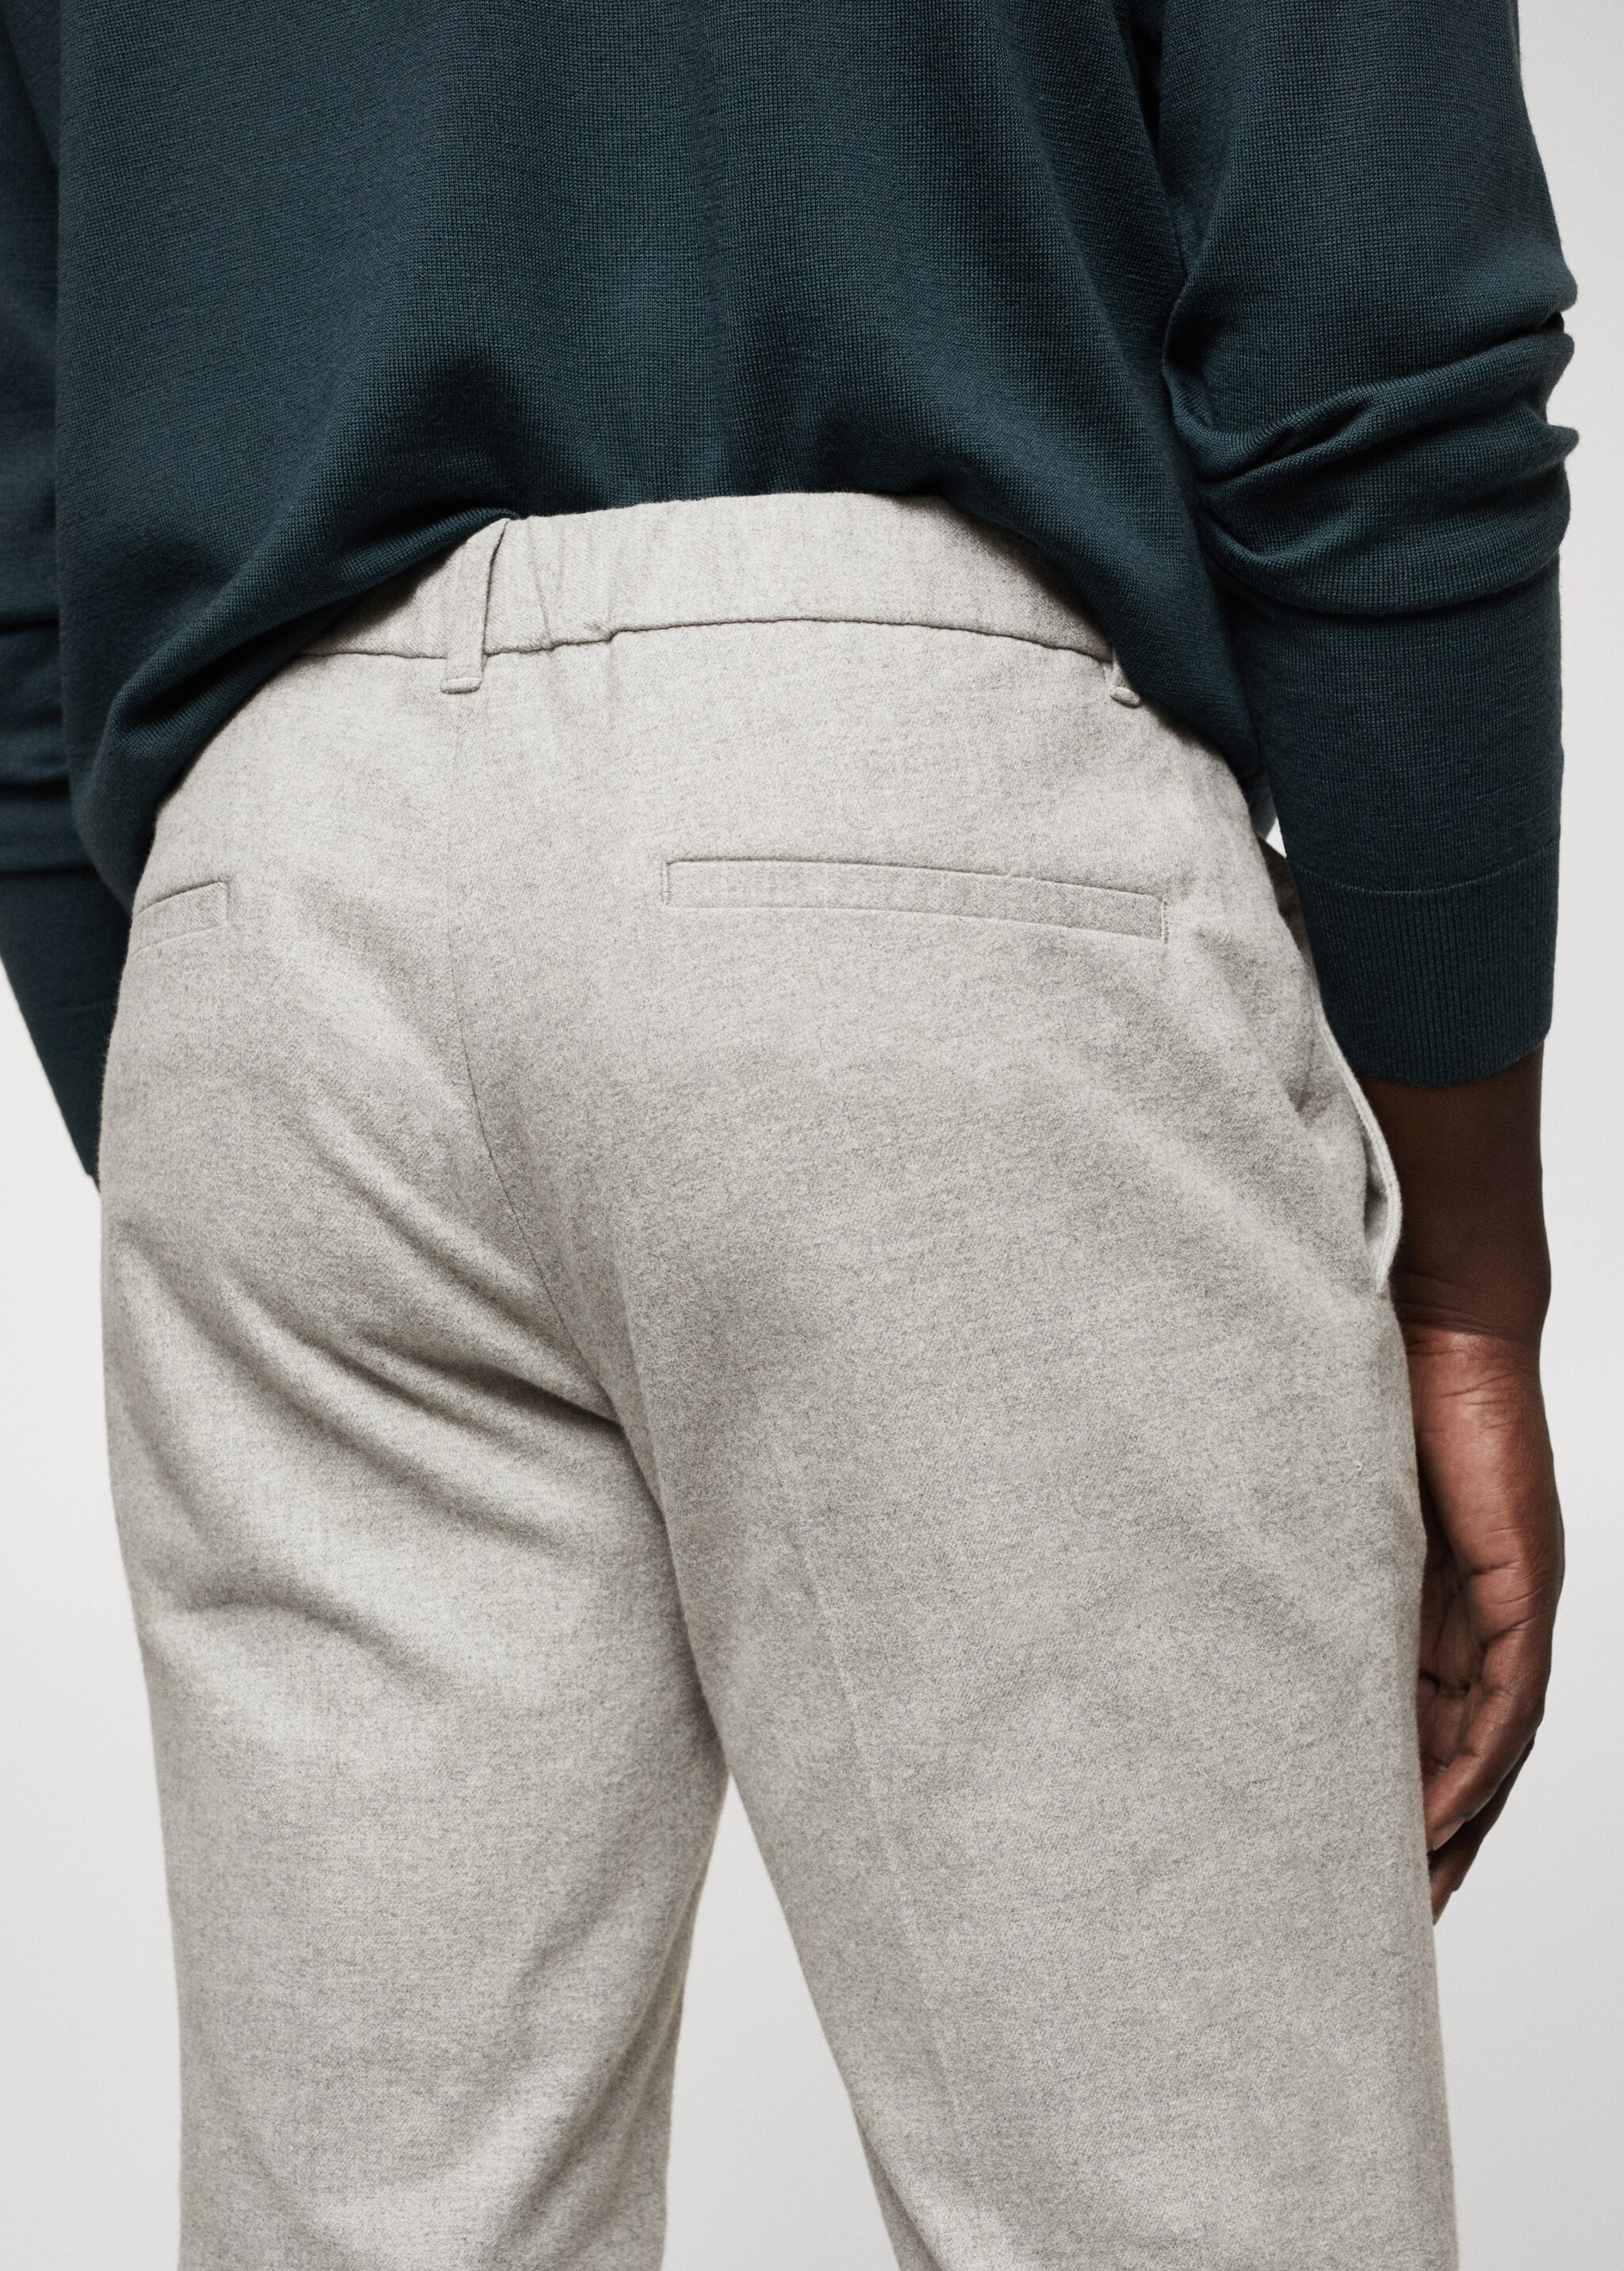 Pantalón slim fit algodón - Detalle del artículo 4